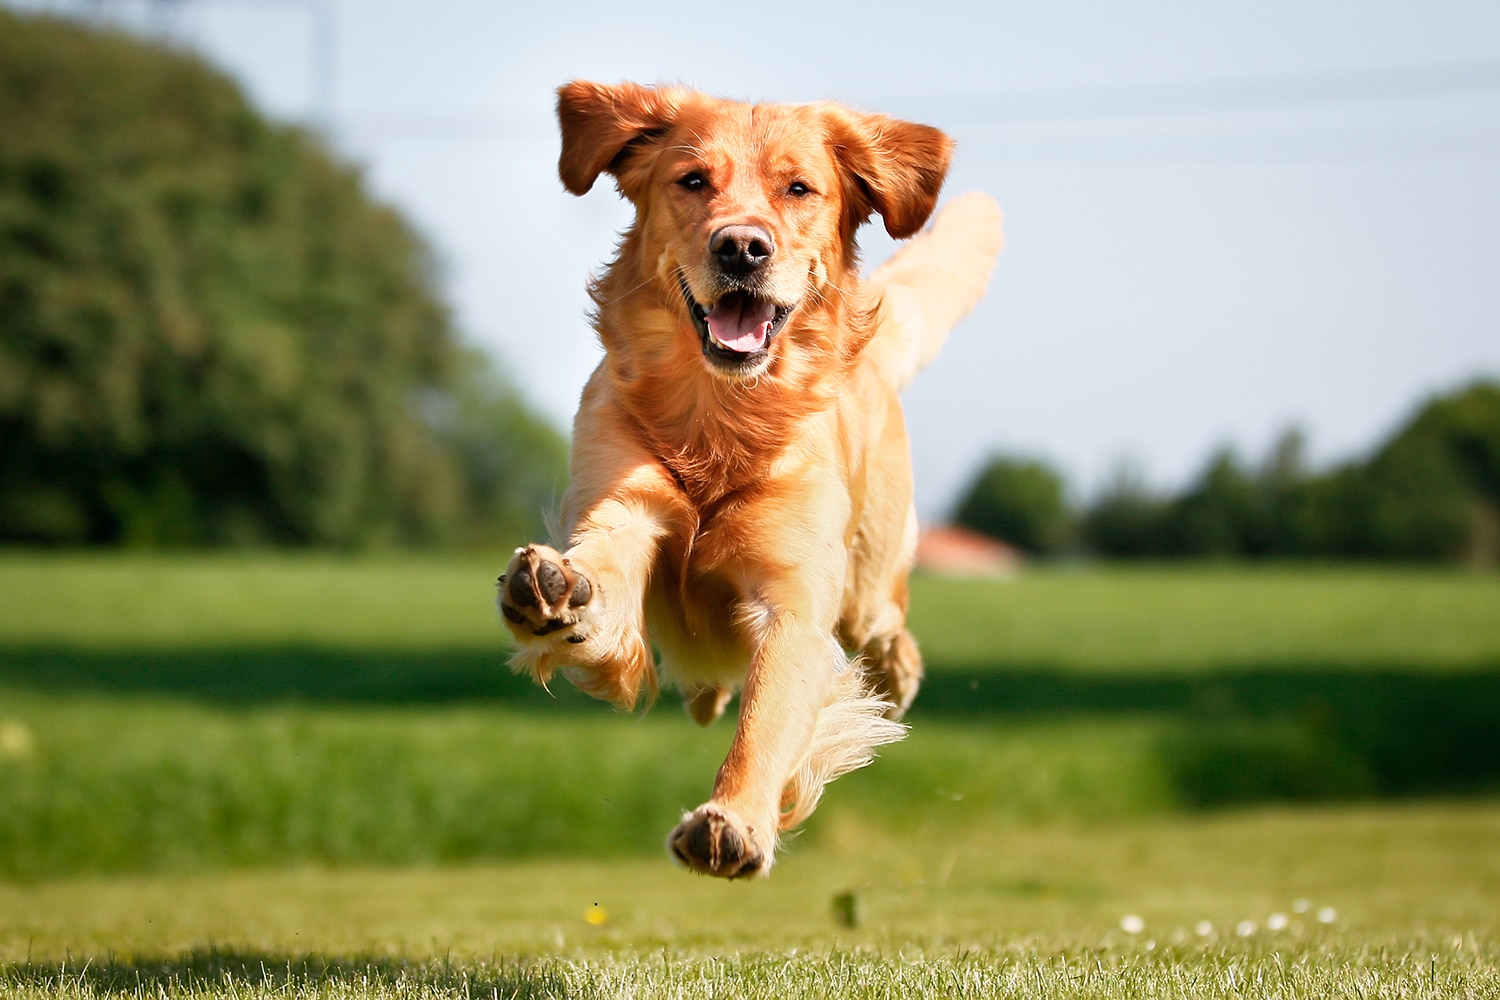 Ingen Meget rart godt Konklusion Ønsker du deg hund? Her får du tips om hunderaser, trening og mye mer!￼ -  Dyrevernalliansen